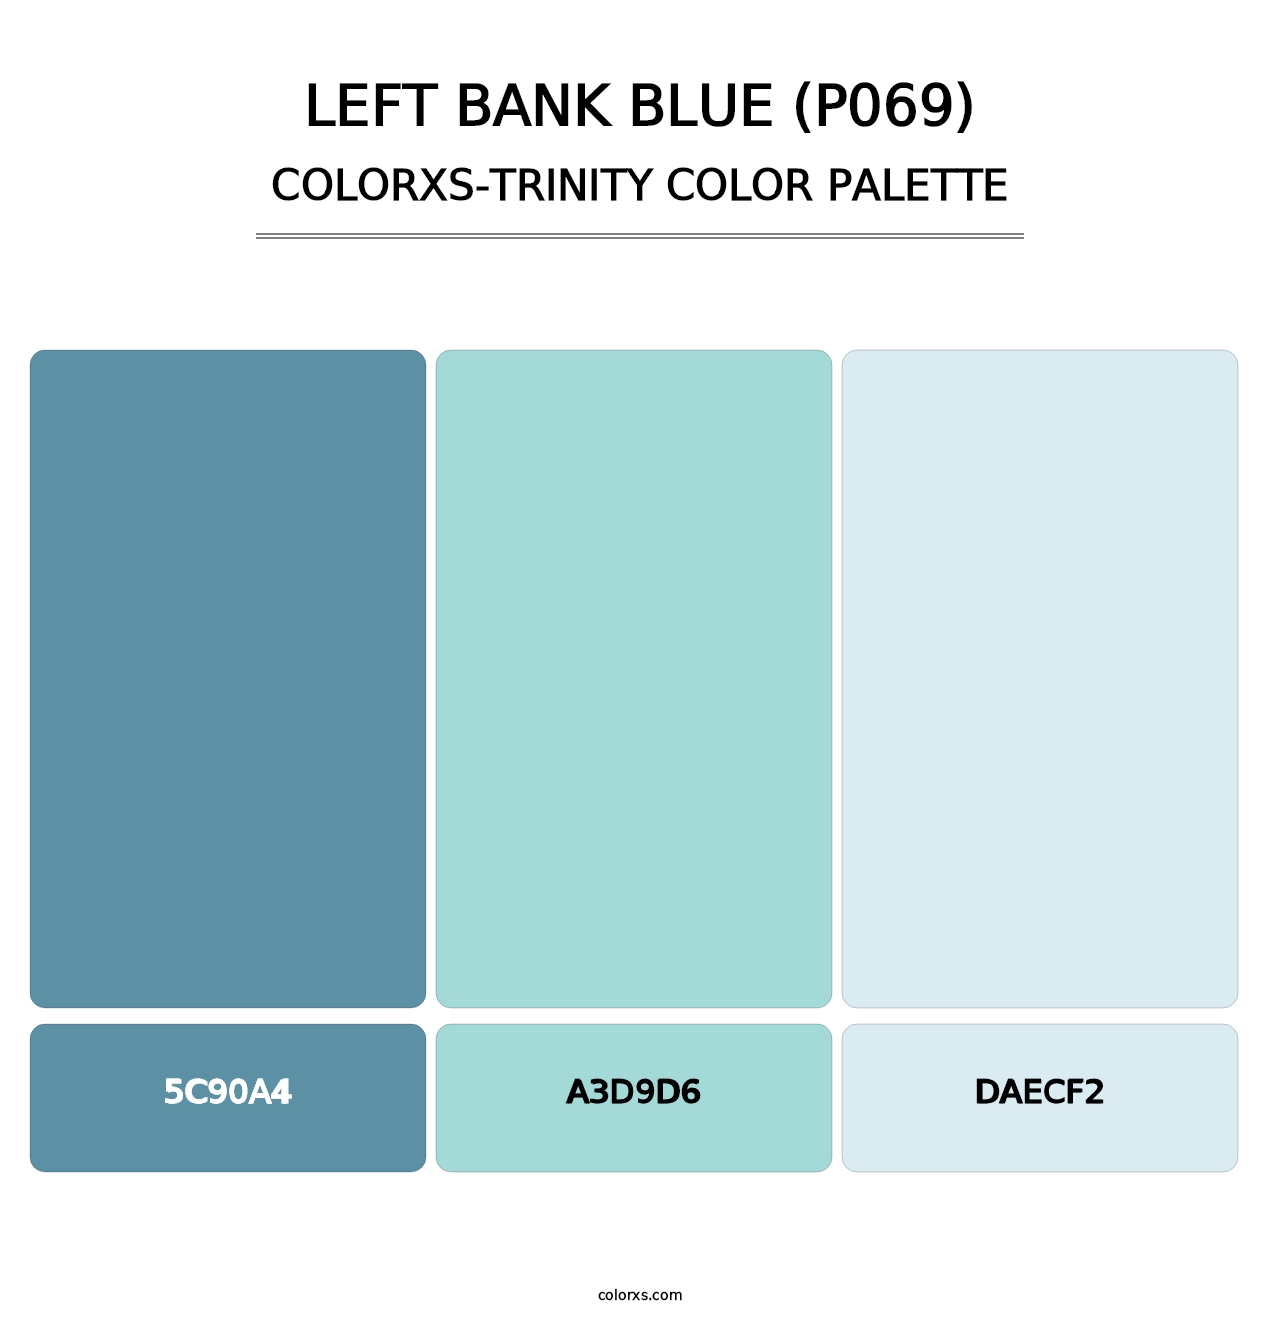 Left Bank Blue (P069) - Colorxs Trinity Palette